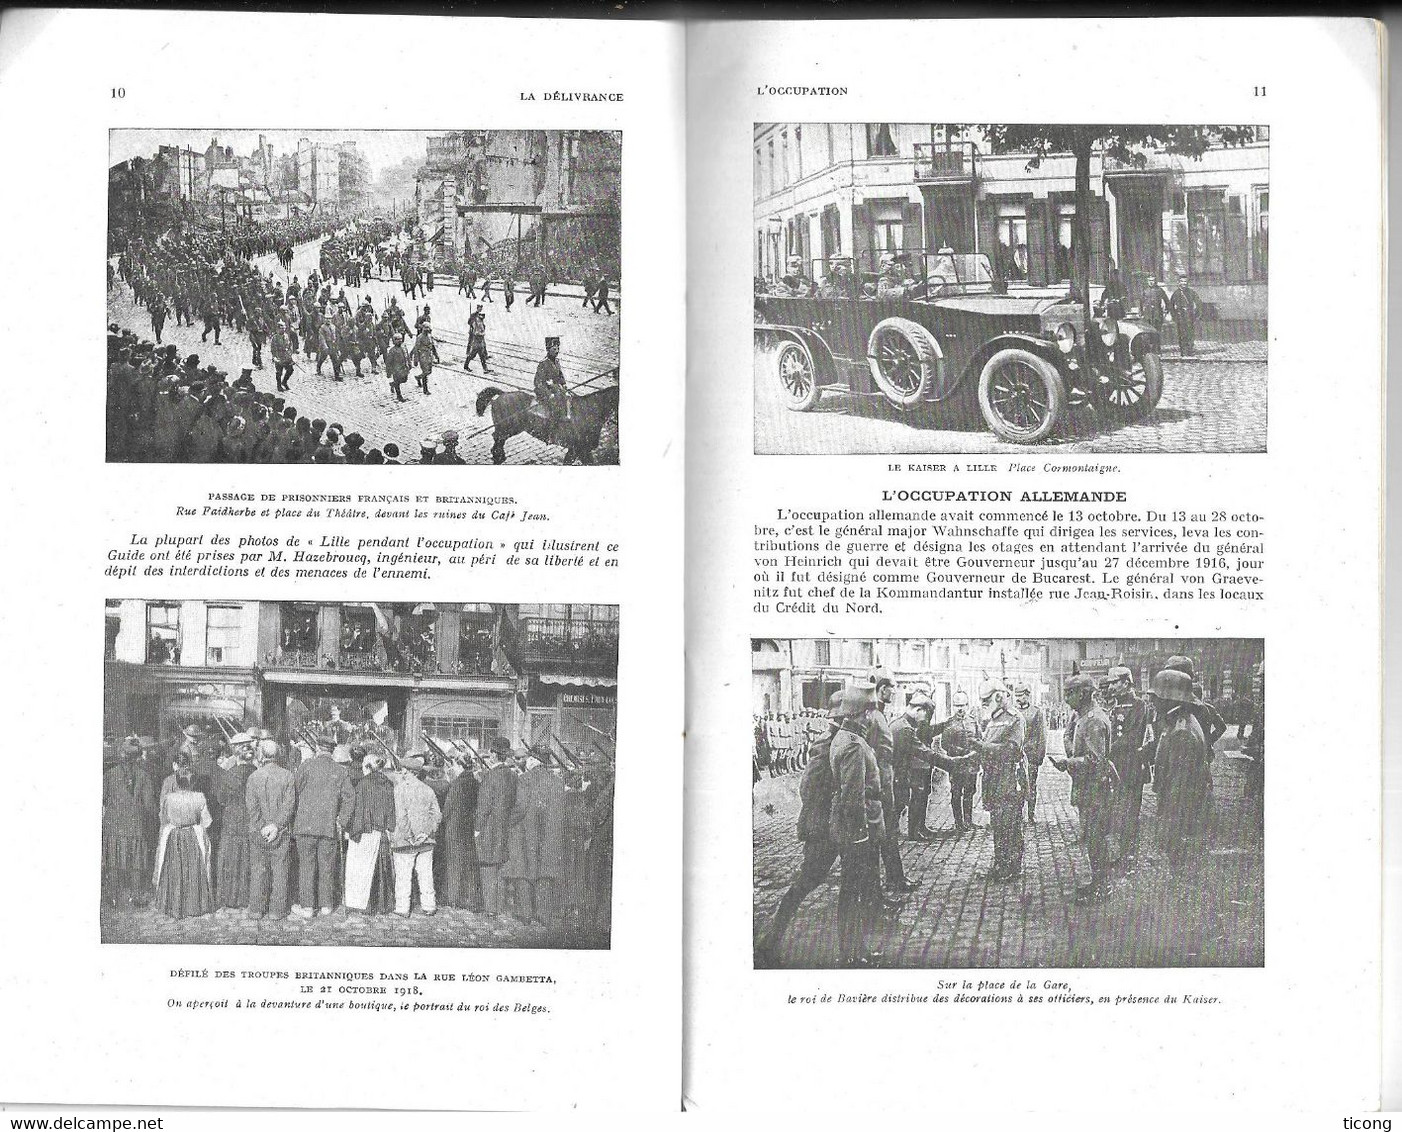 MICHELIN GUIDE ILLUSTRE MILITAIRE LES CHAMPS DE BATAILLES 1914 1918 - LILLE AVANT ET PENDANT LA GUERRE - EDITE EN 1920 - Michelin (guias)